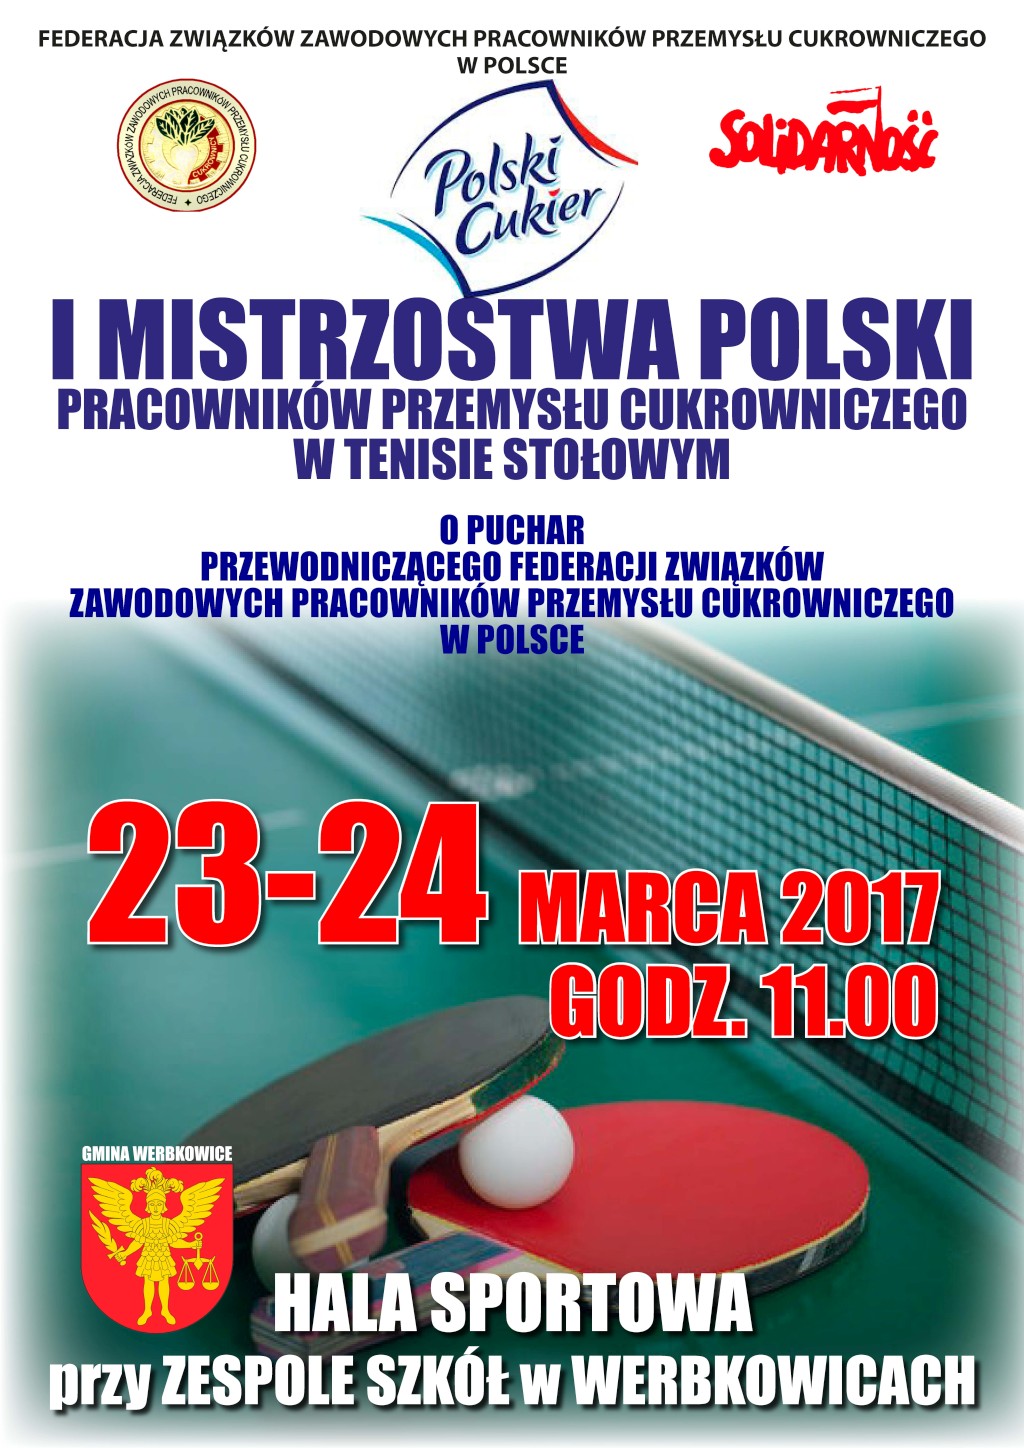 Mistrzostwa Polski Pracowników Przemysłu Cukrowniczego w tenisie stołowym